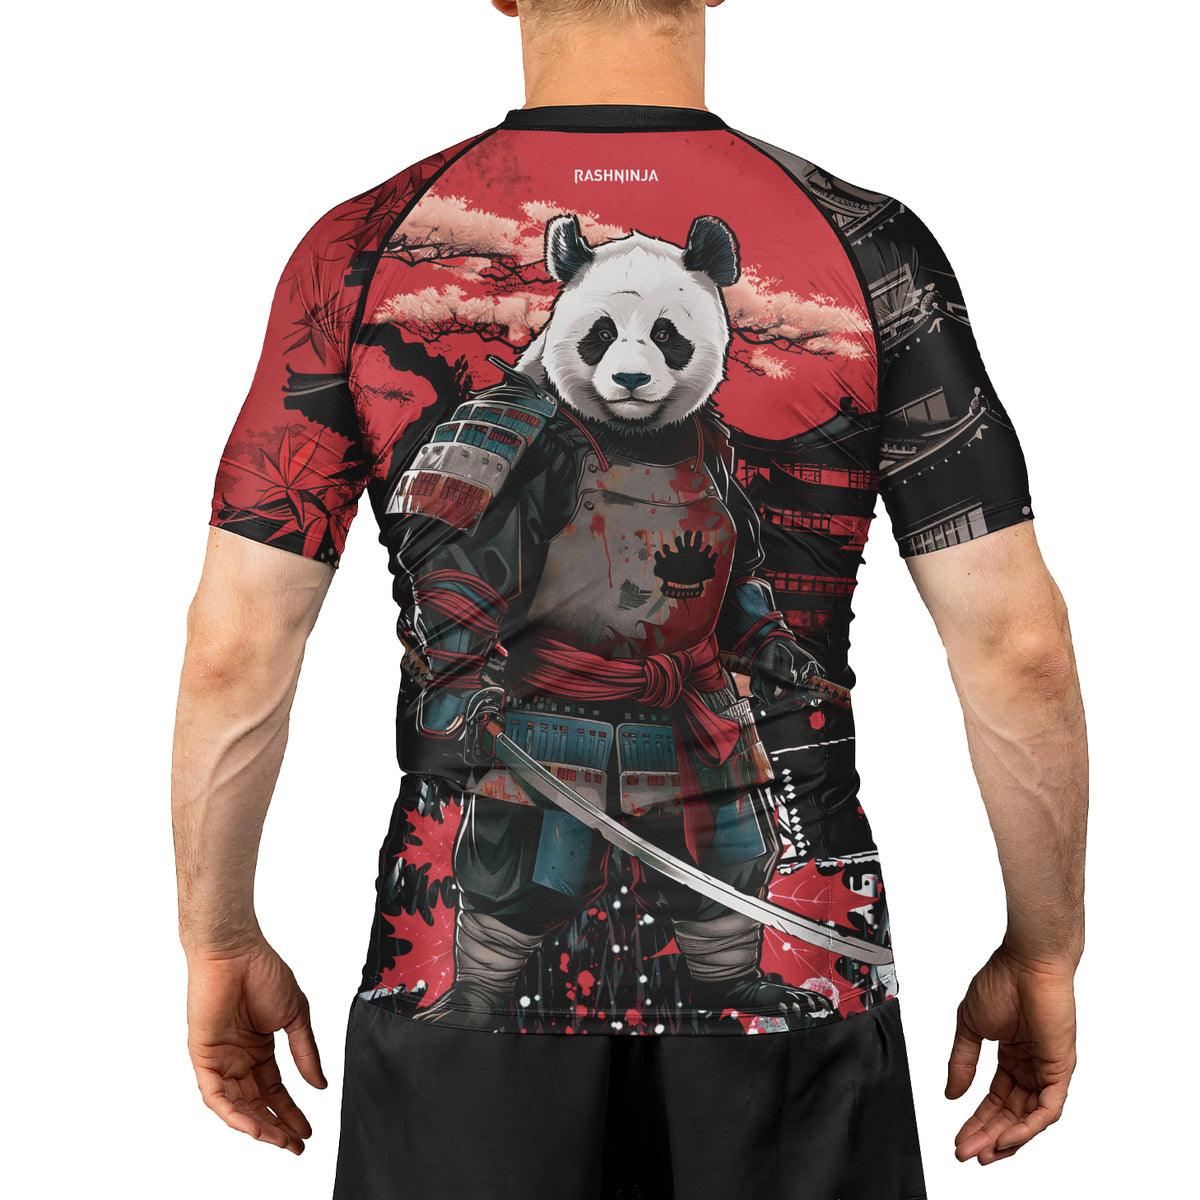 Rashninja Panda Samurai Legend Men's Short Sleeve Rash Guard - Rashninja LLC